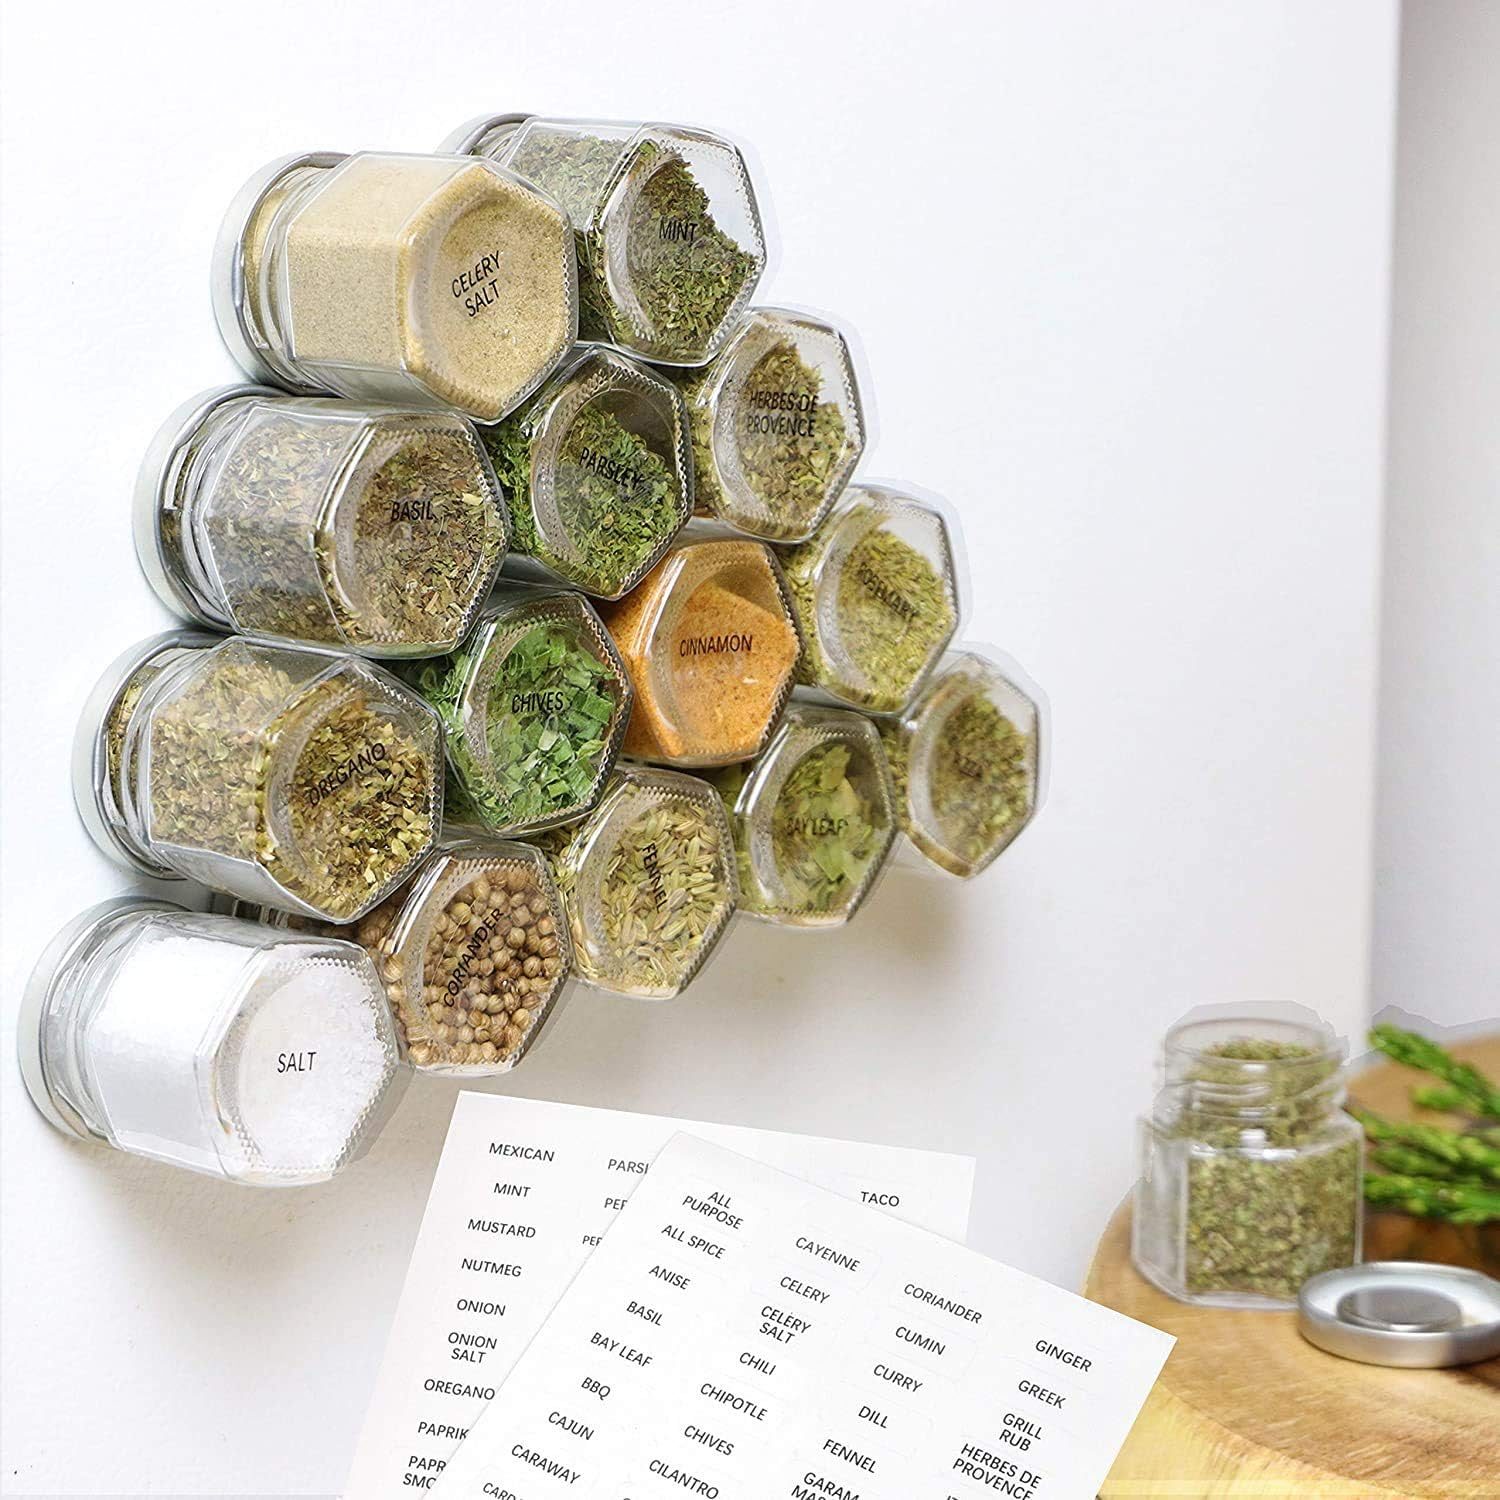 13 Genius Spice Storage Ideas to Upgrade Your Kitchen Organization